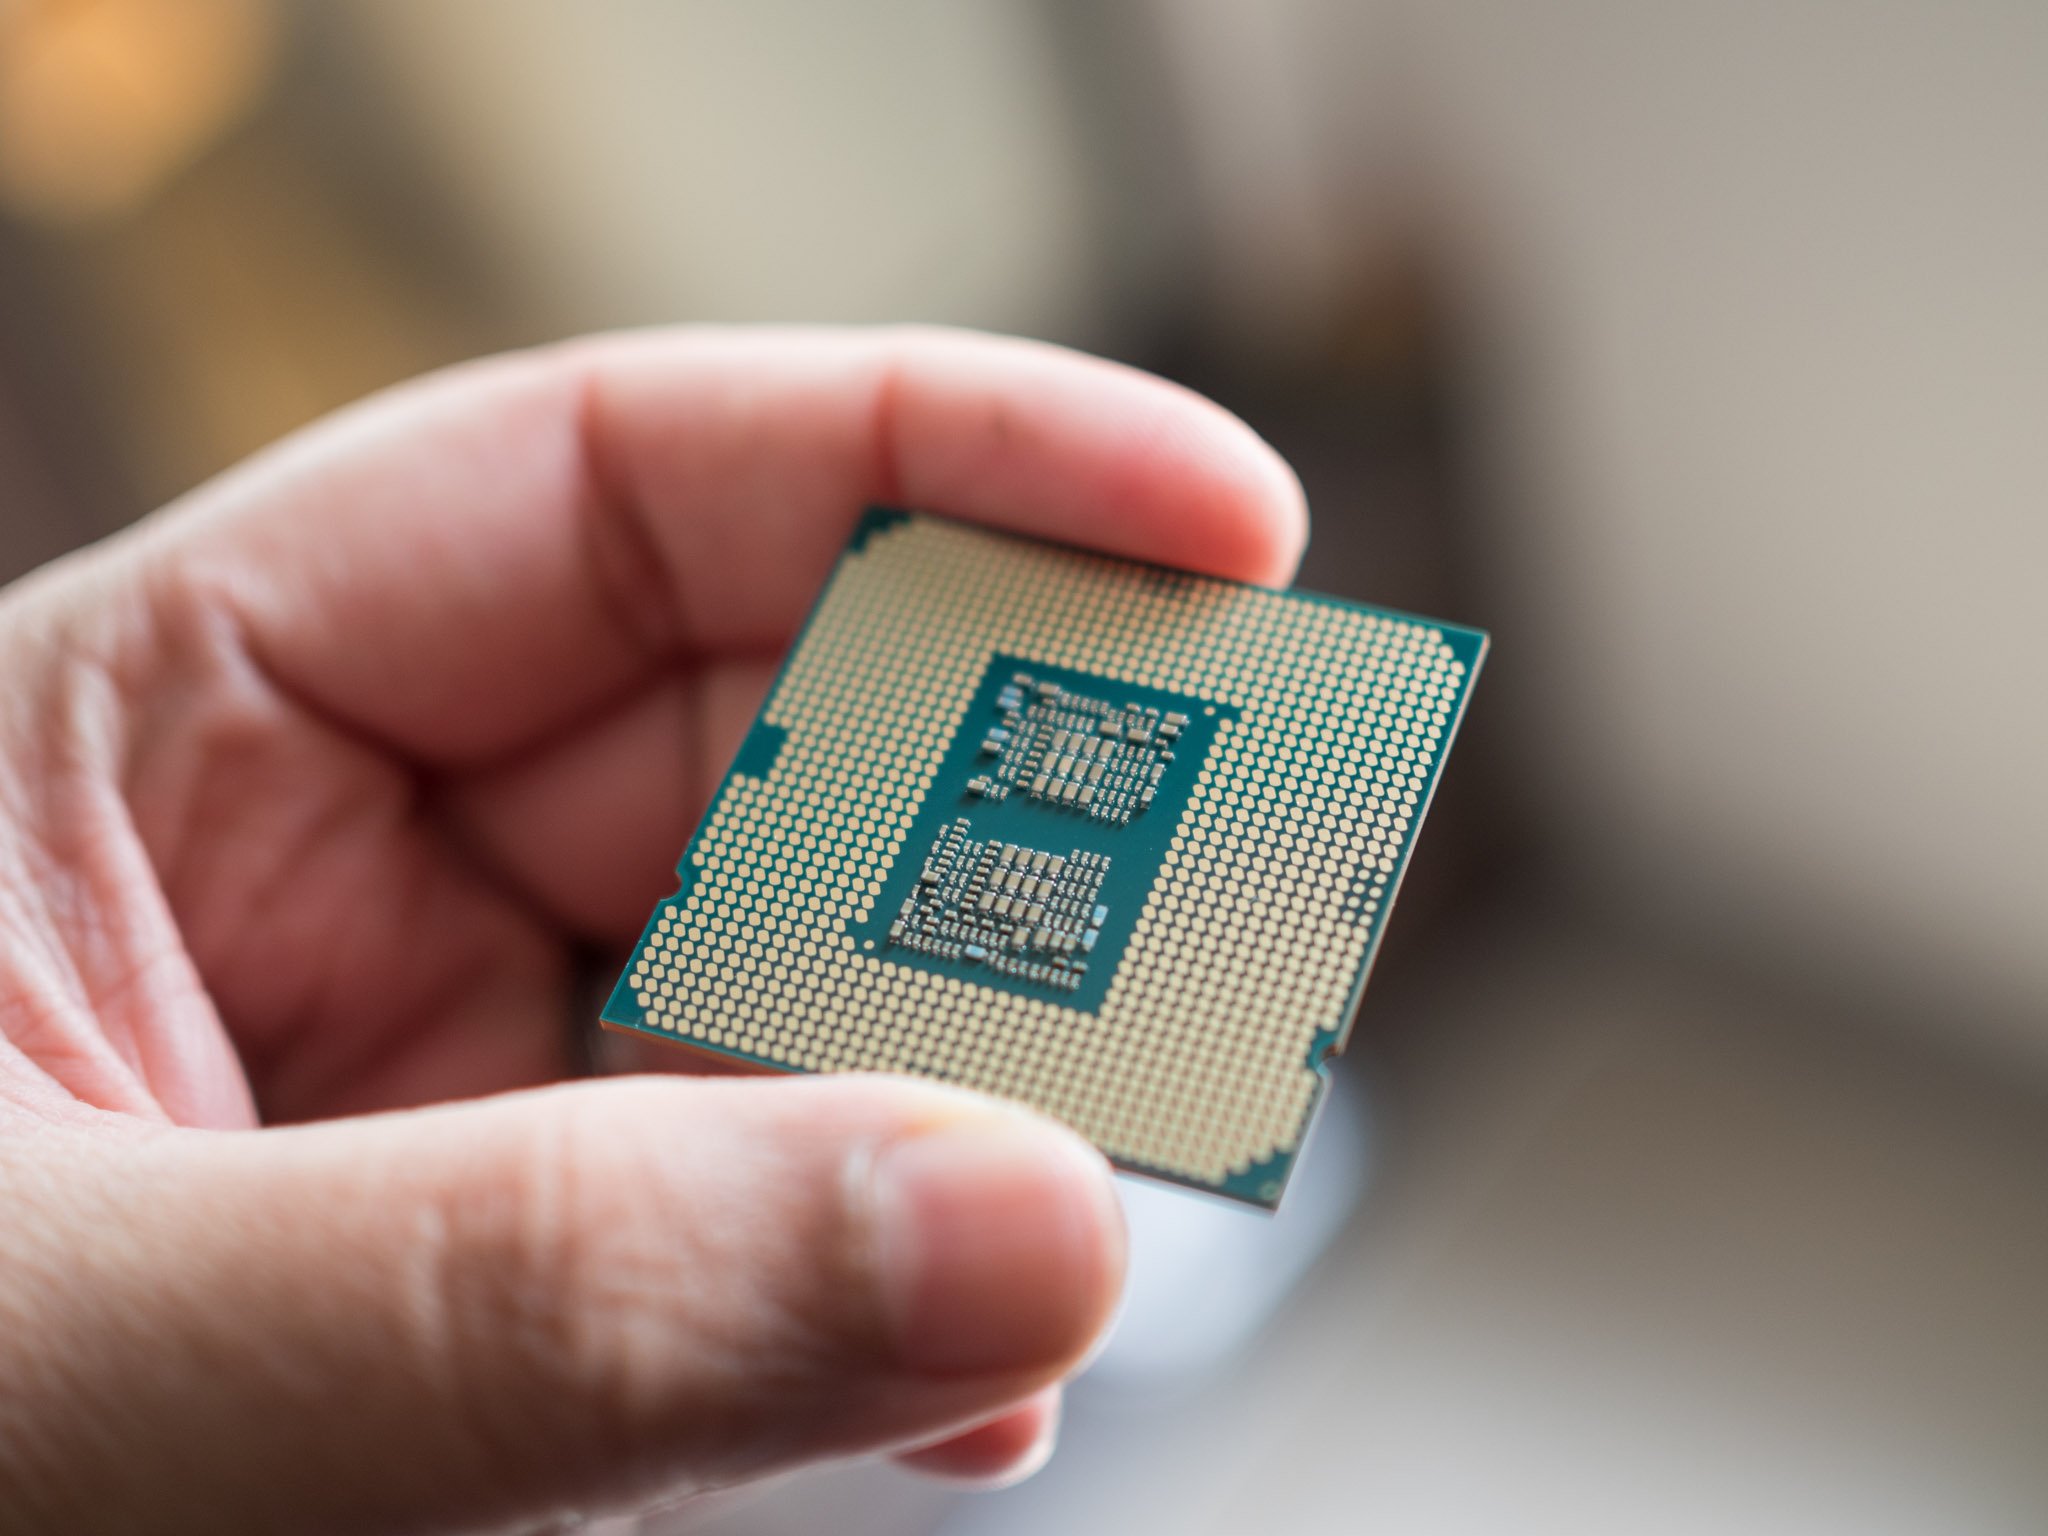 Leaked slides detail Intel's 12th Gen Alder Lake-S processors | Windows Central